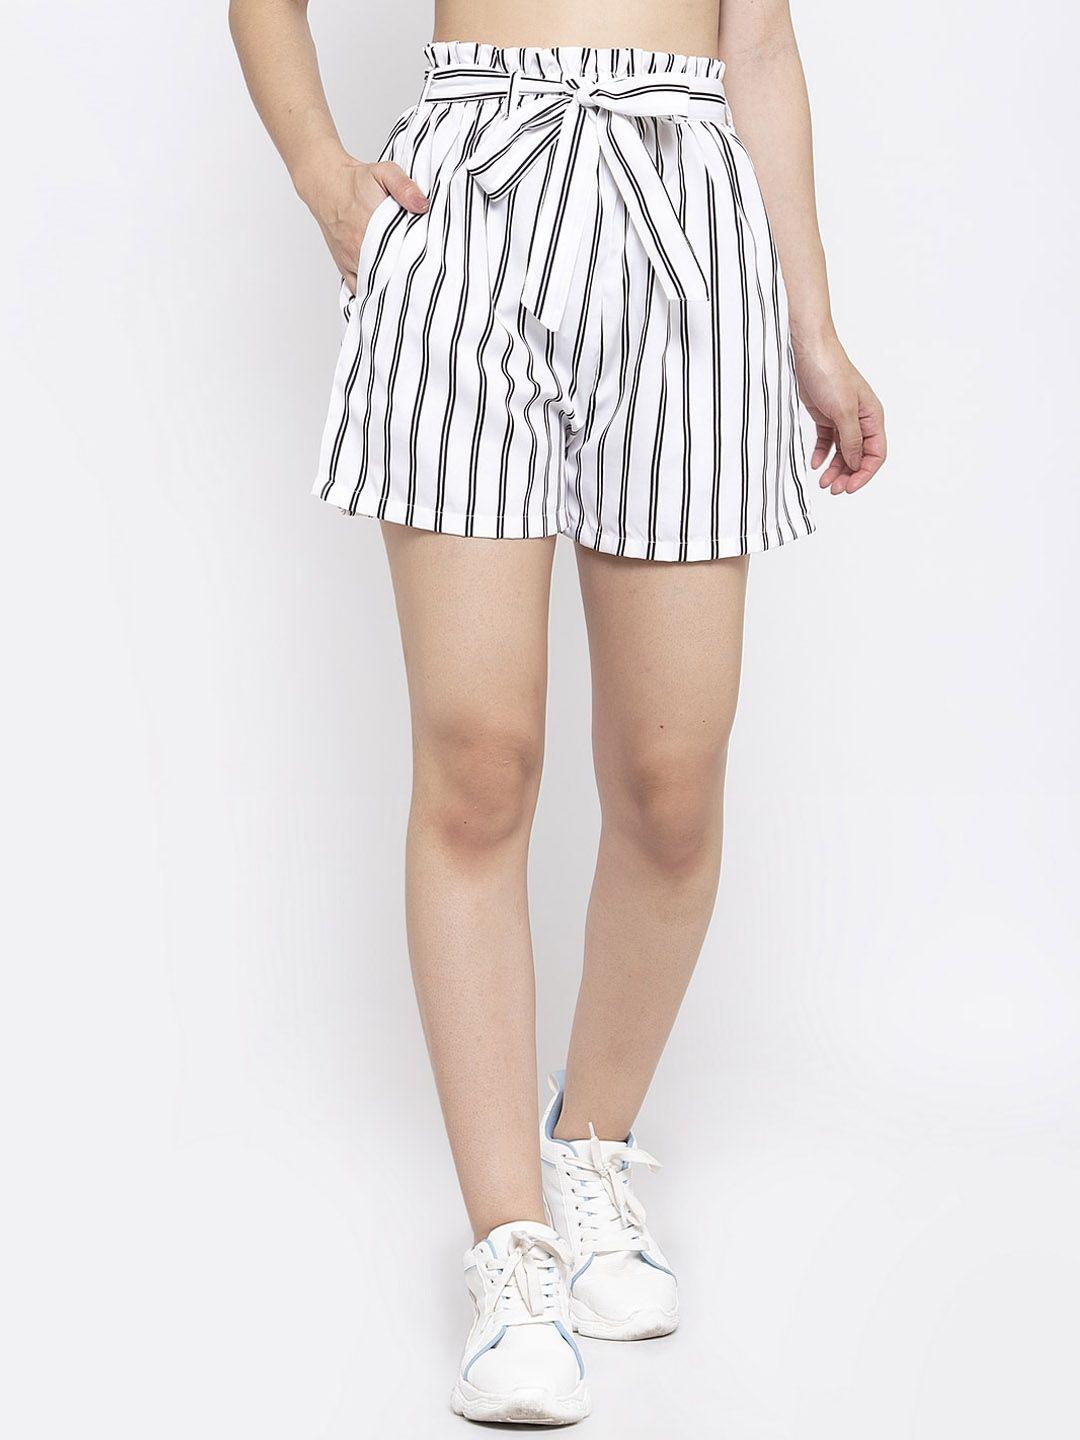 zastraa women striped slim fit shorts